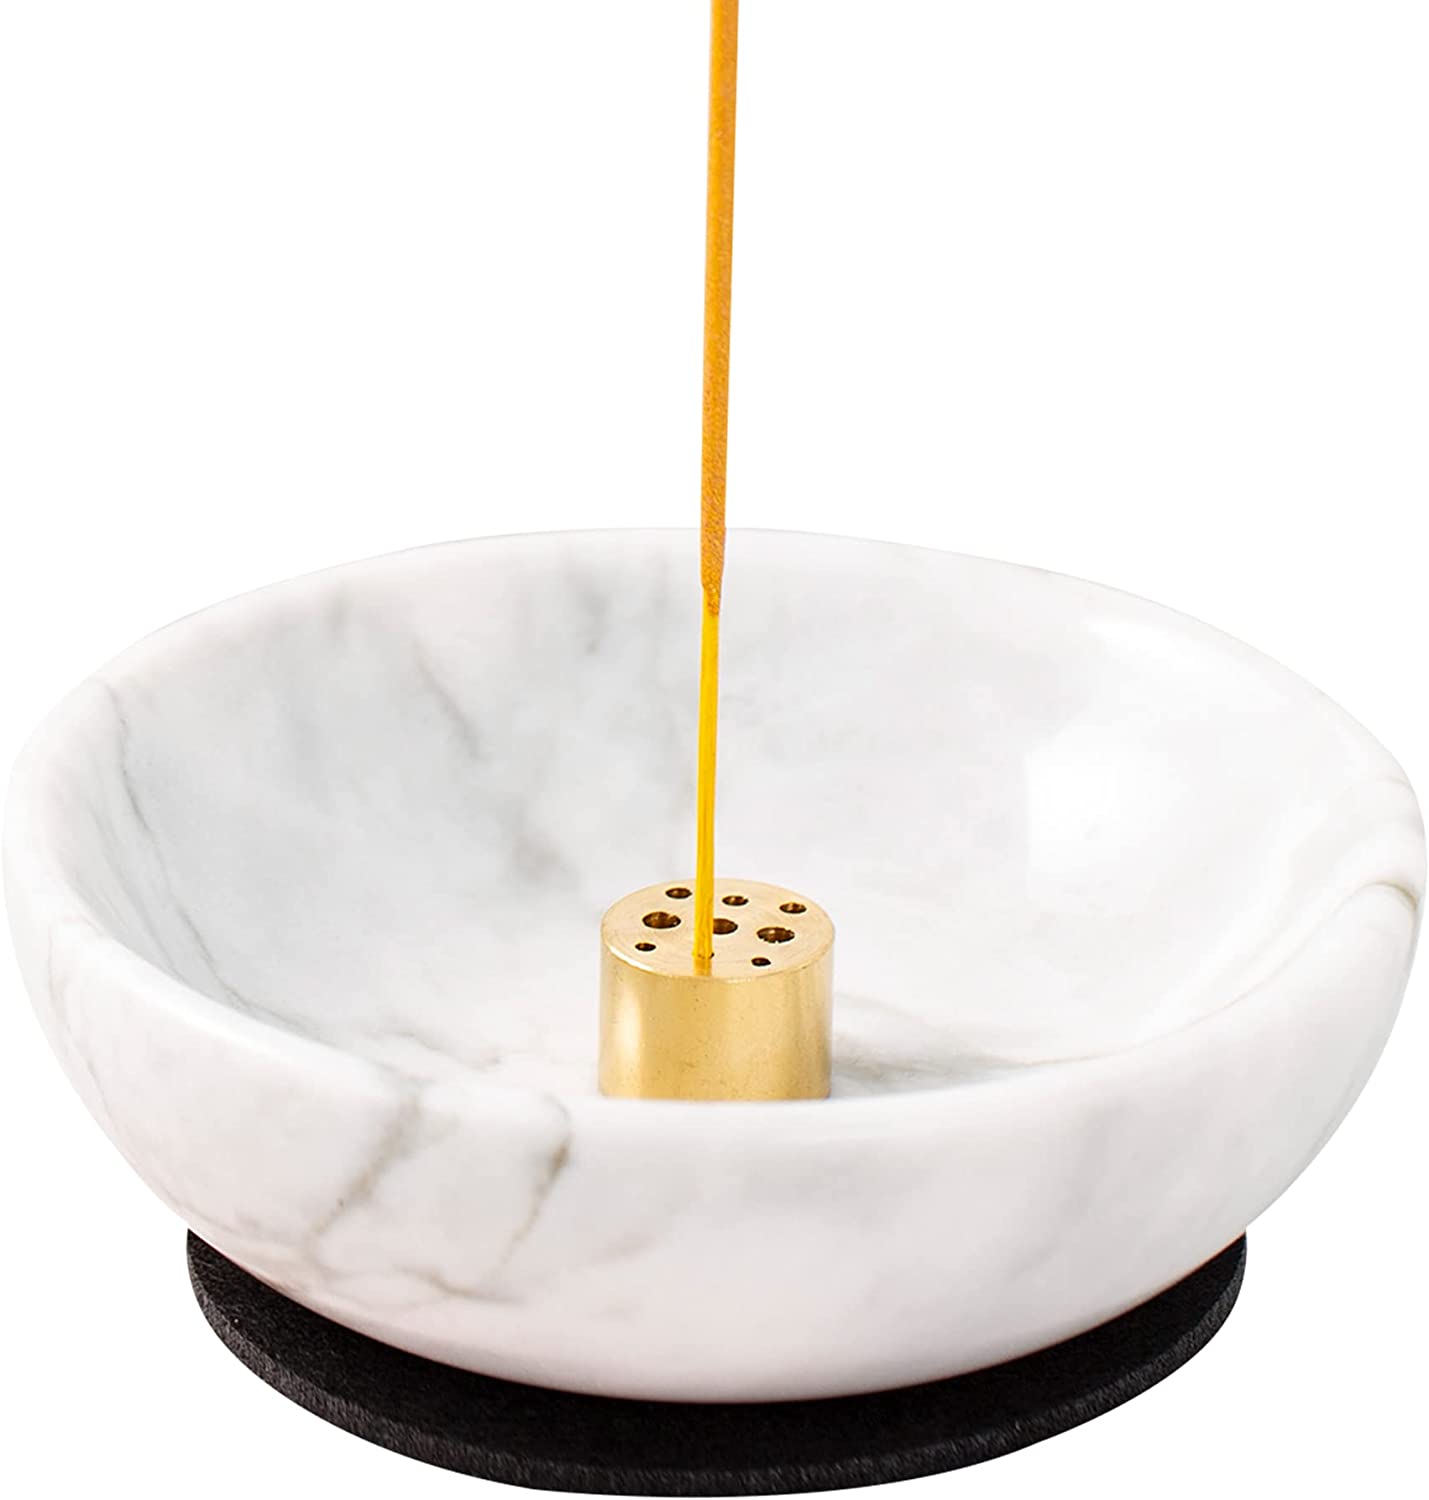  GARMOLY Incense Burner, Incense Holder for Sticks